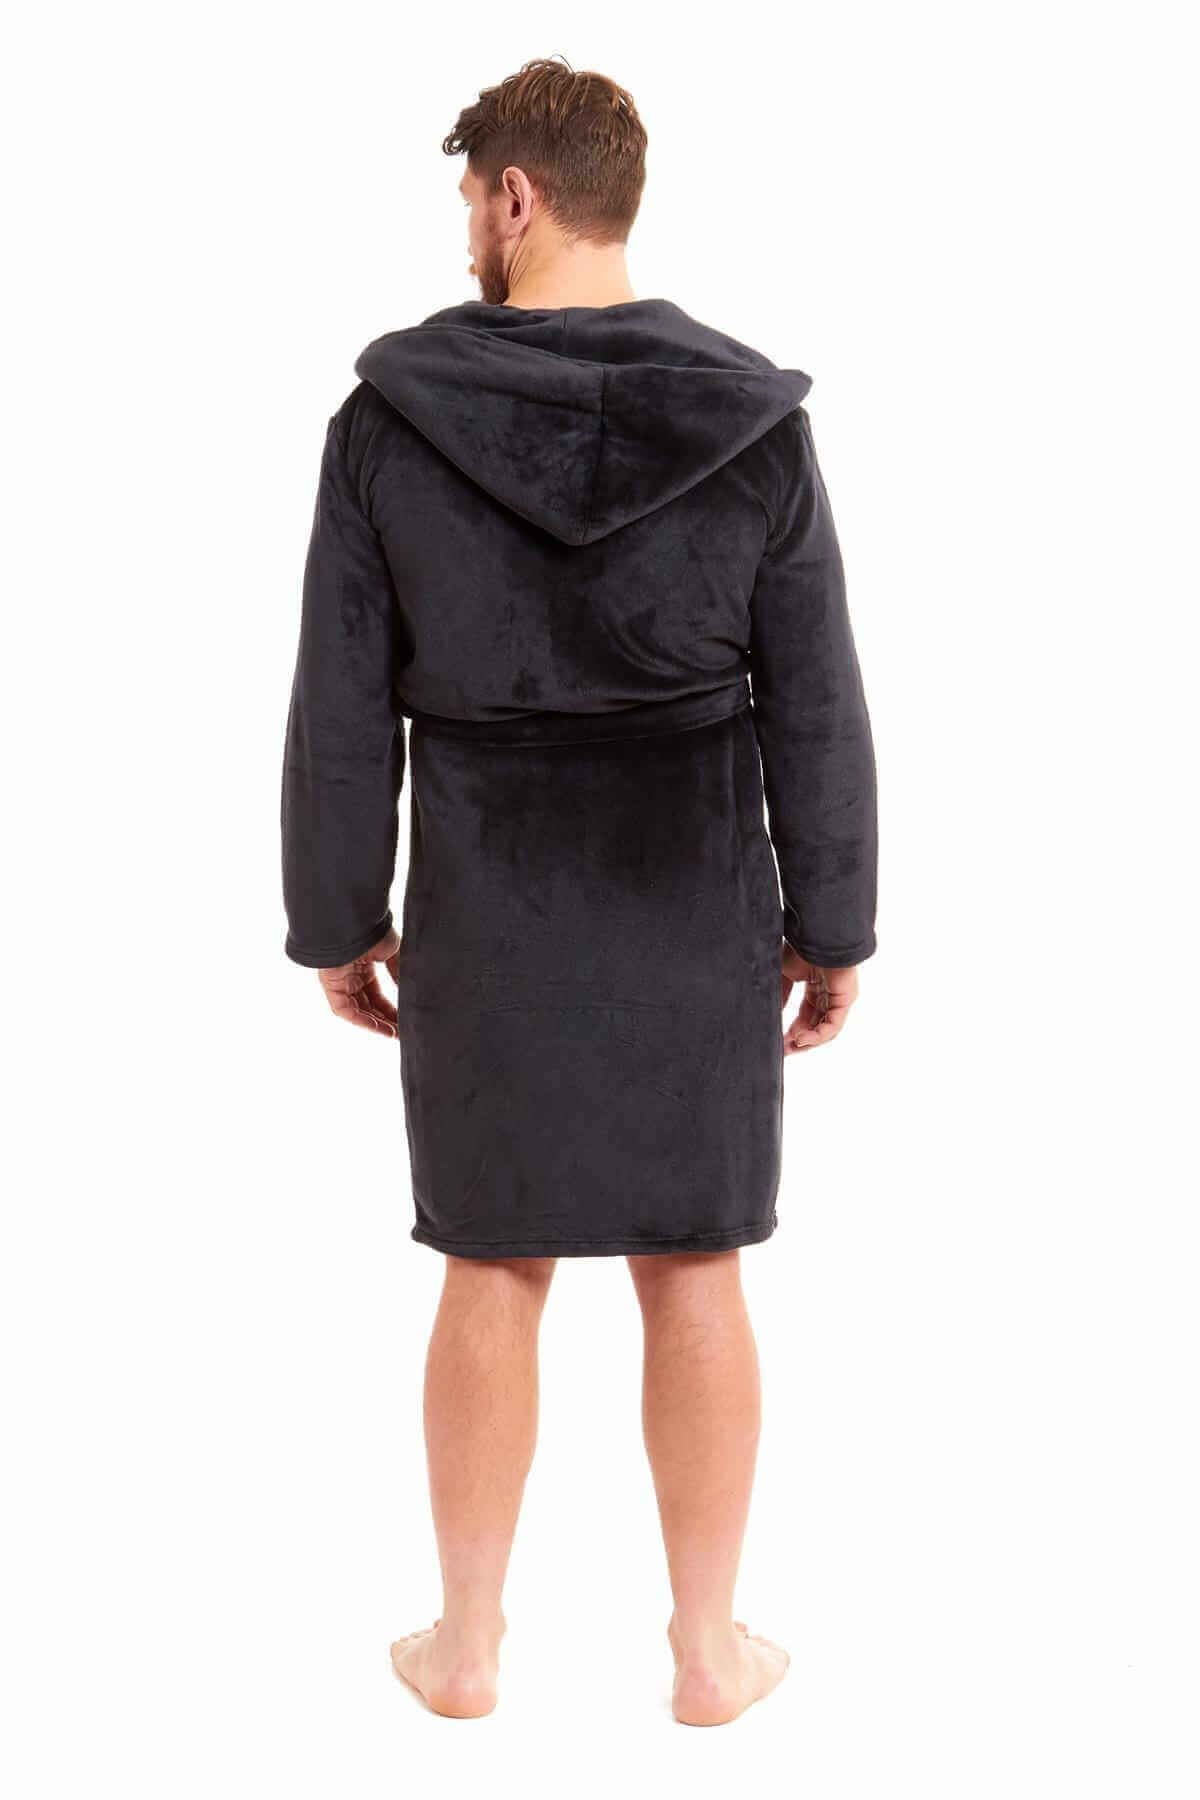 Men's Hooded Plush Flannel Dressing Gown. Buy now for £15.00. A Robe by Daisy Dreamer. black, blue, charcoal, dressing gown, flannel, fleece, grey, gym, hooded robe, hotel, loungewear, man, mens, navy, nightwear, plush fleece, robe, silver, sleepwear, spa